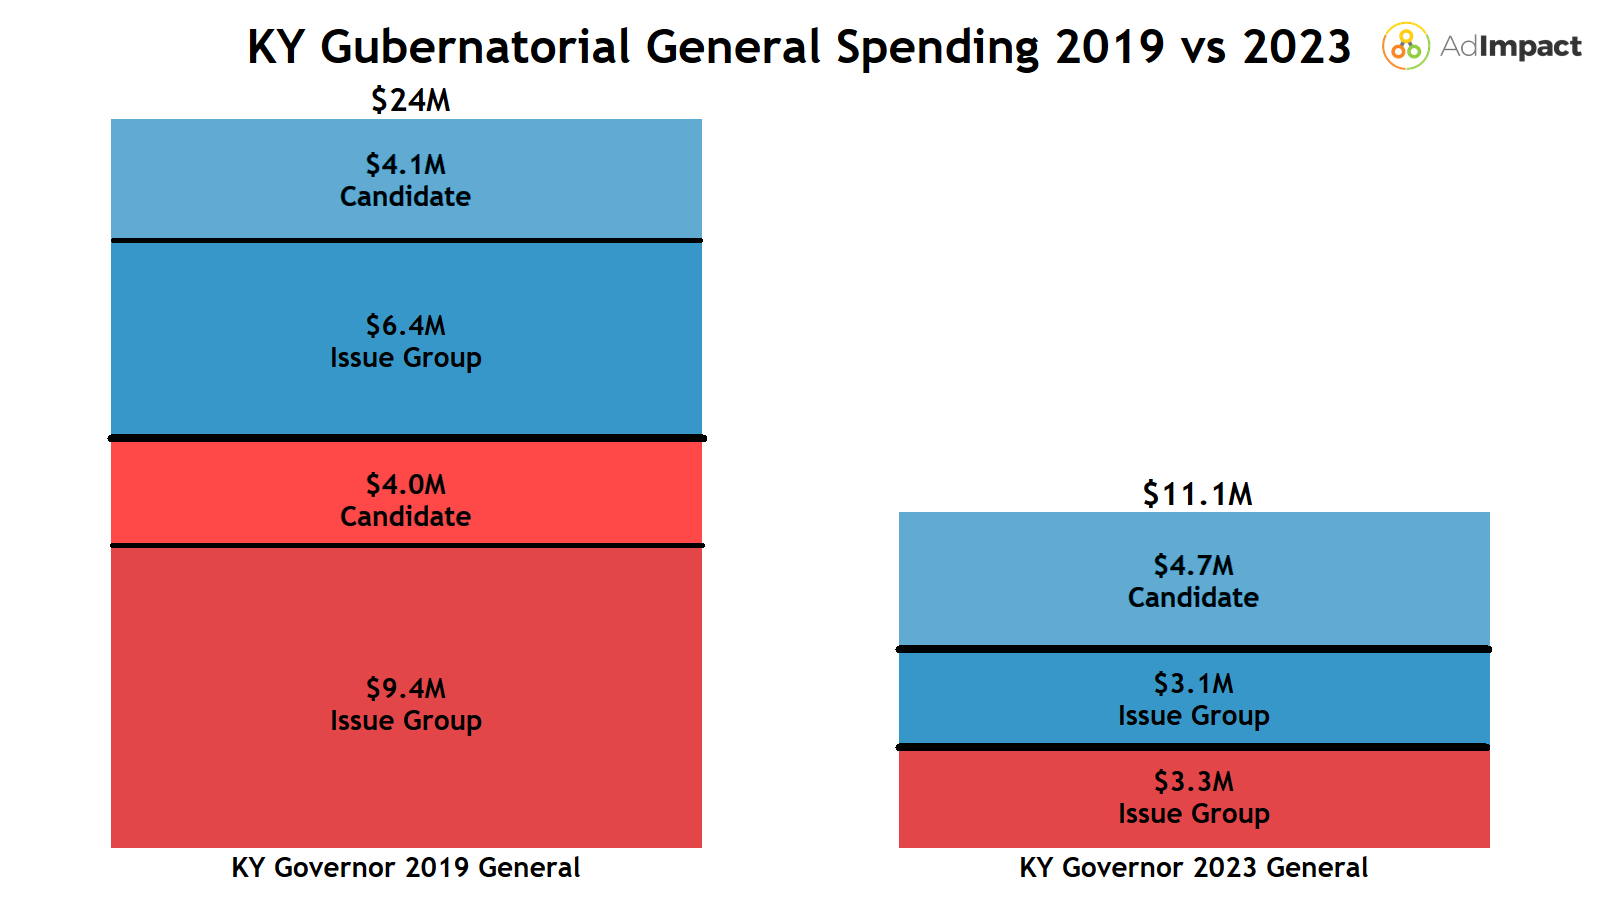 A bar chart comparing Kentucky gubernatorial general spending across 2019 and 2023 